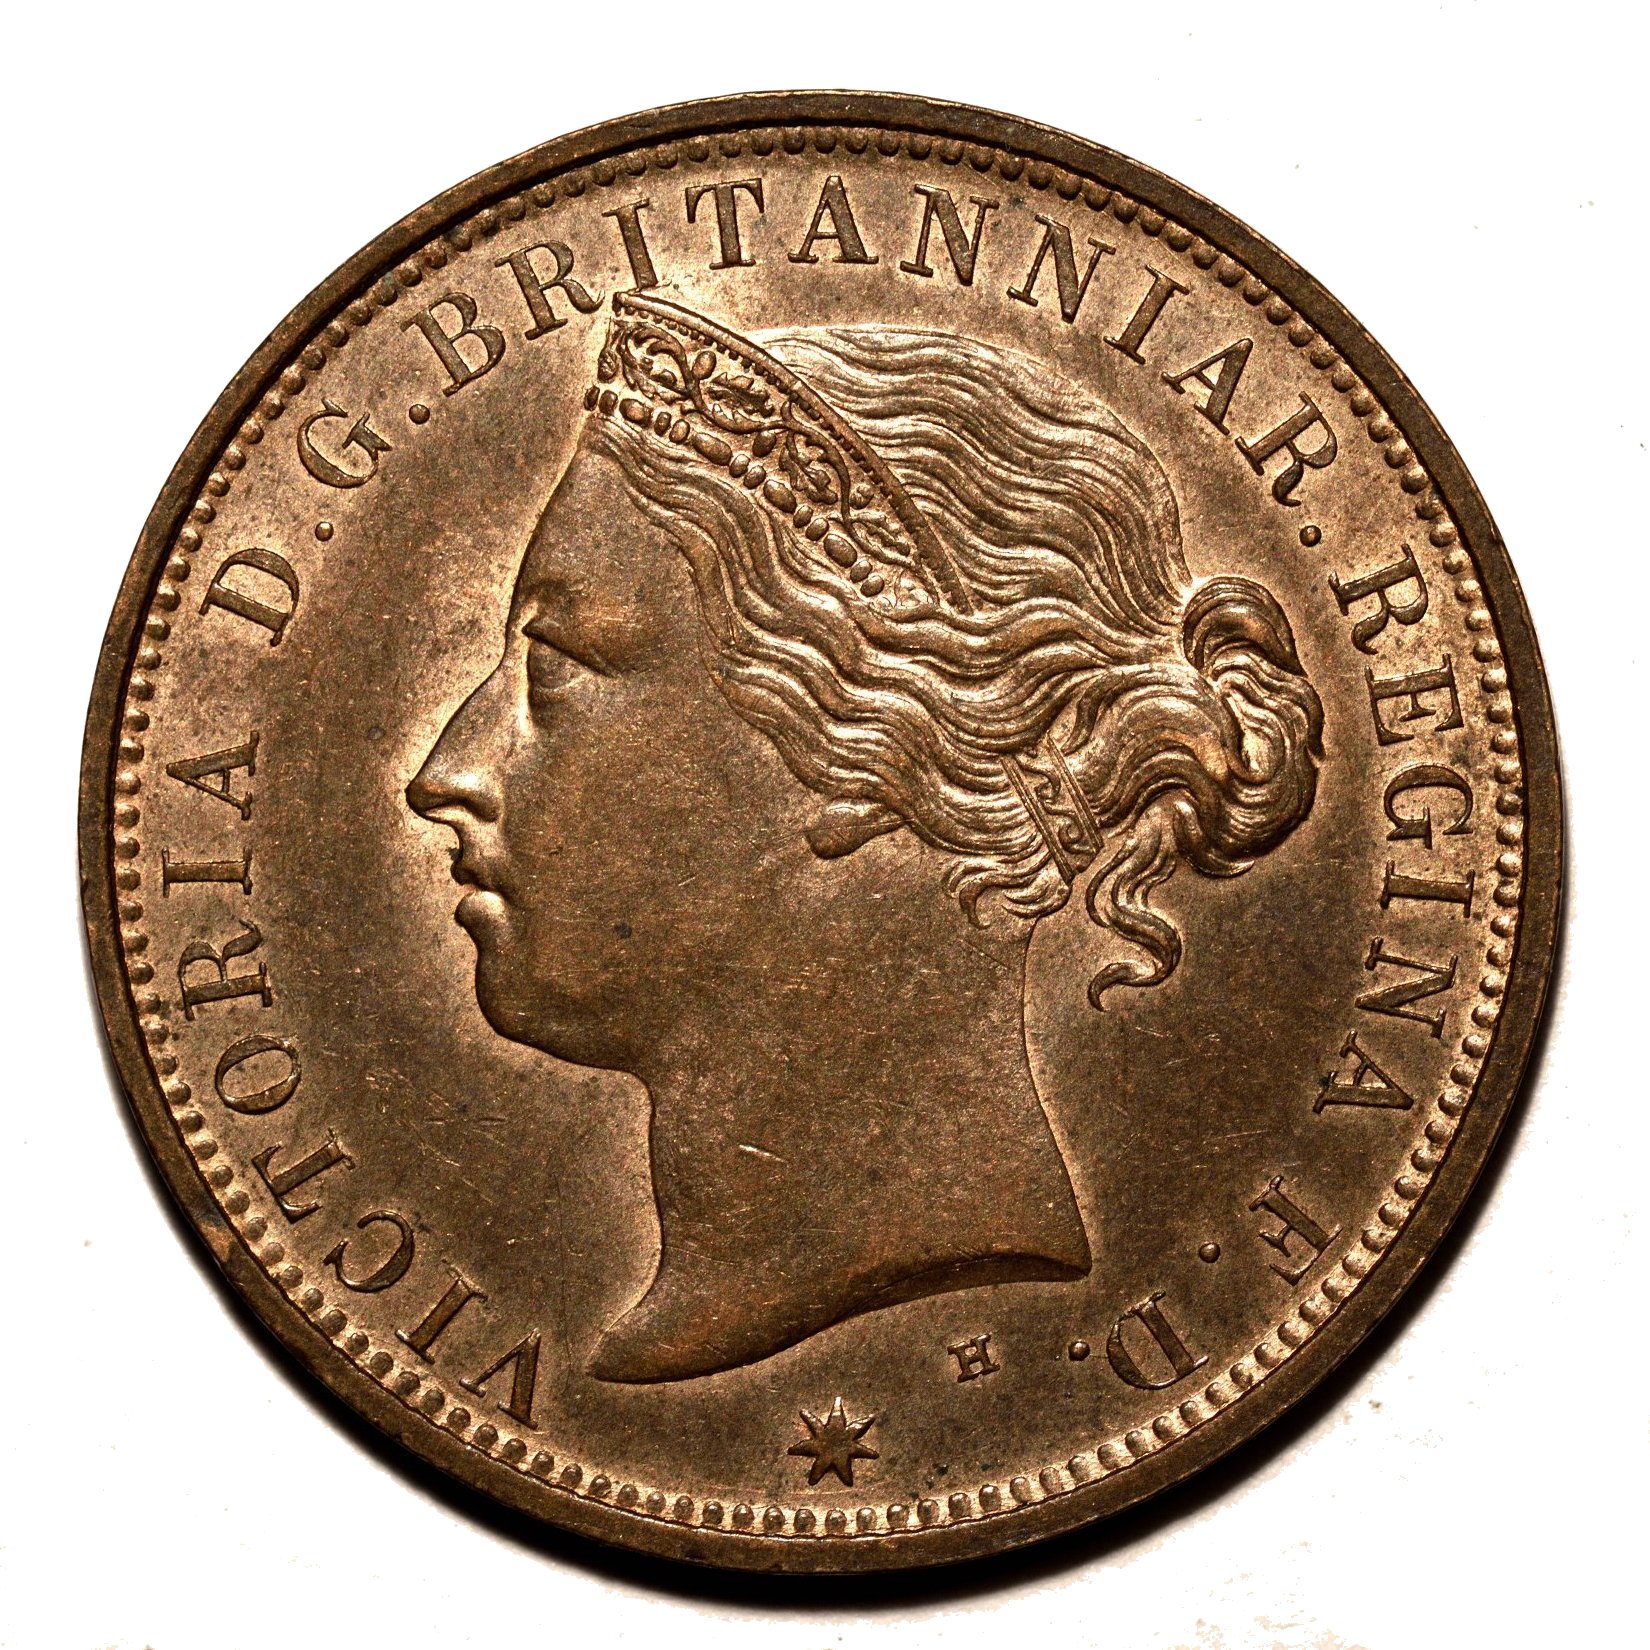 1877 penny obverse